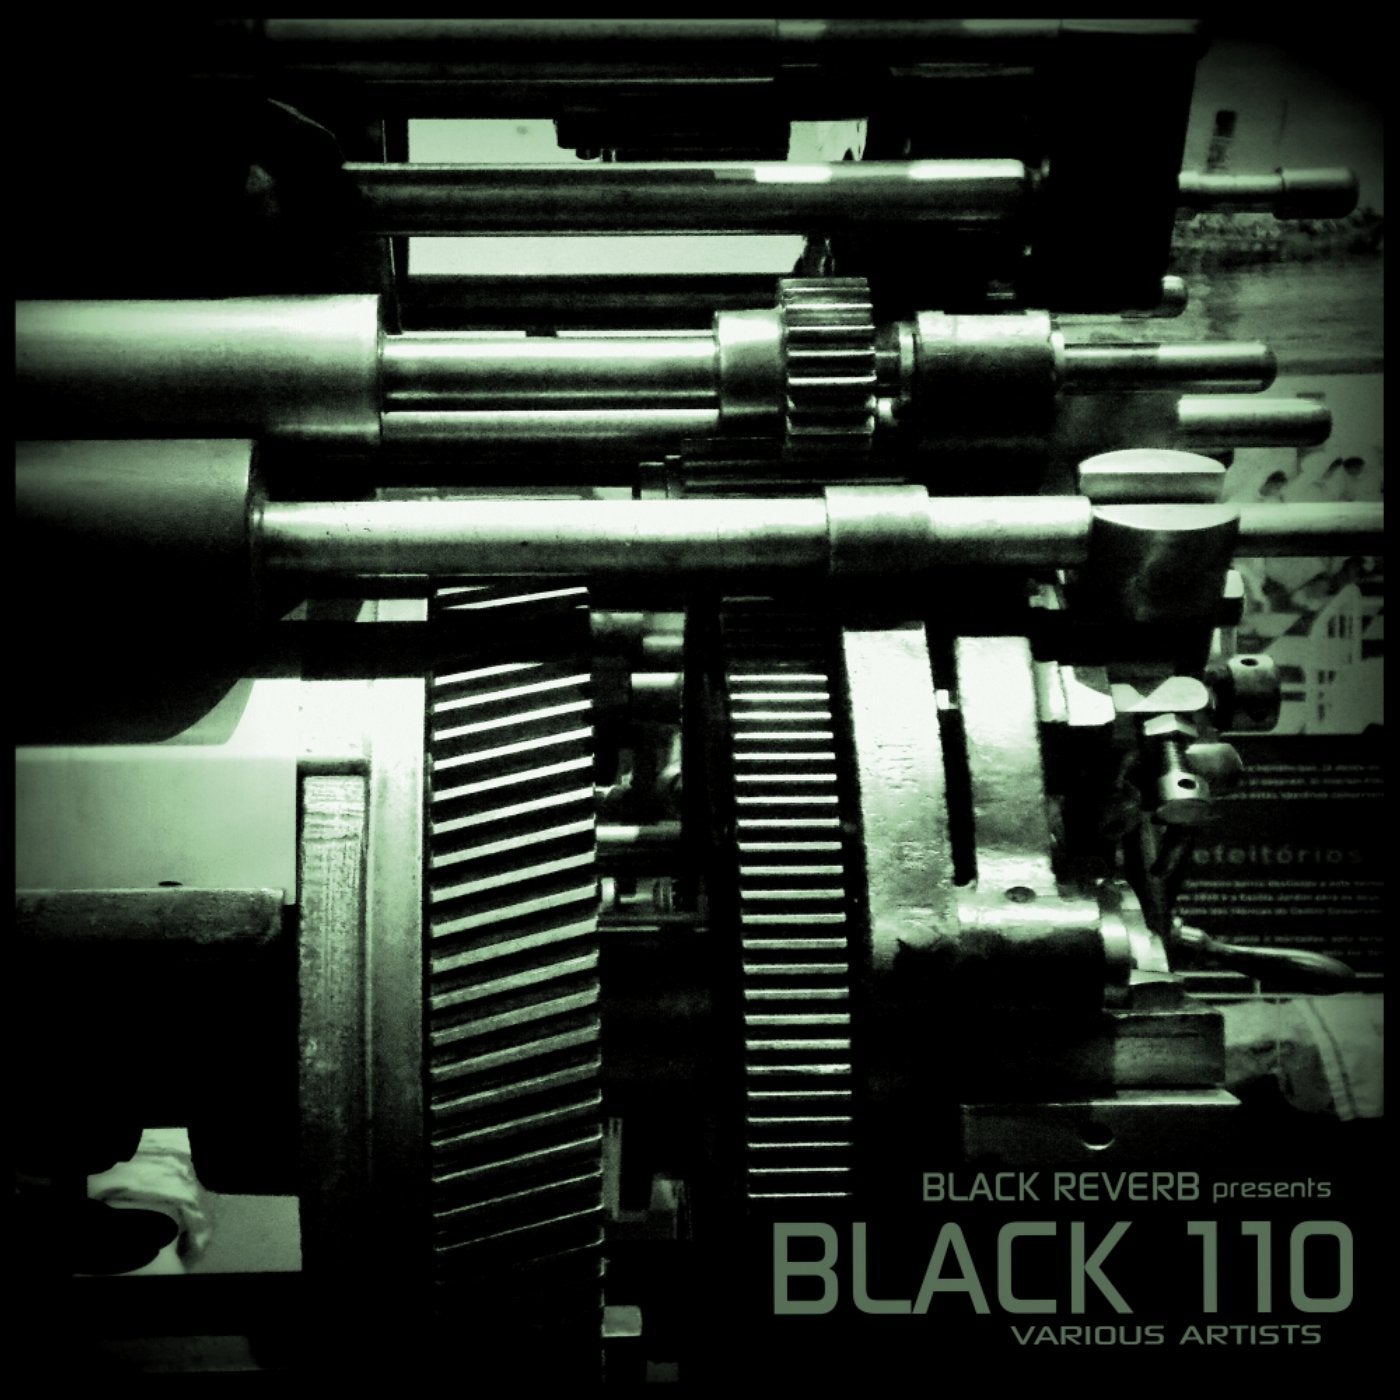 Black 110